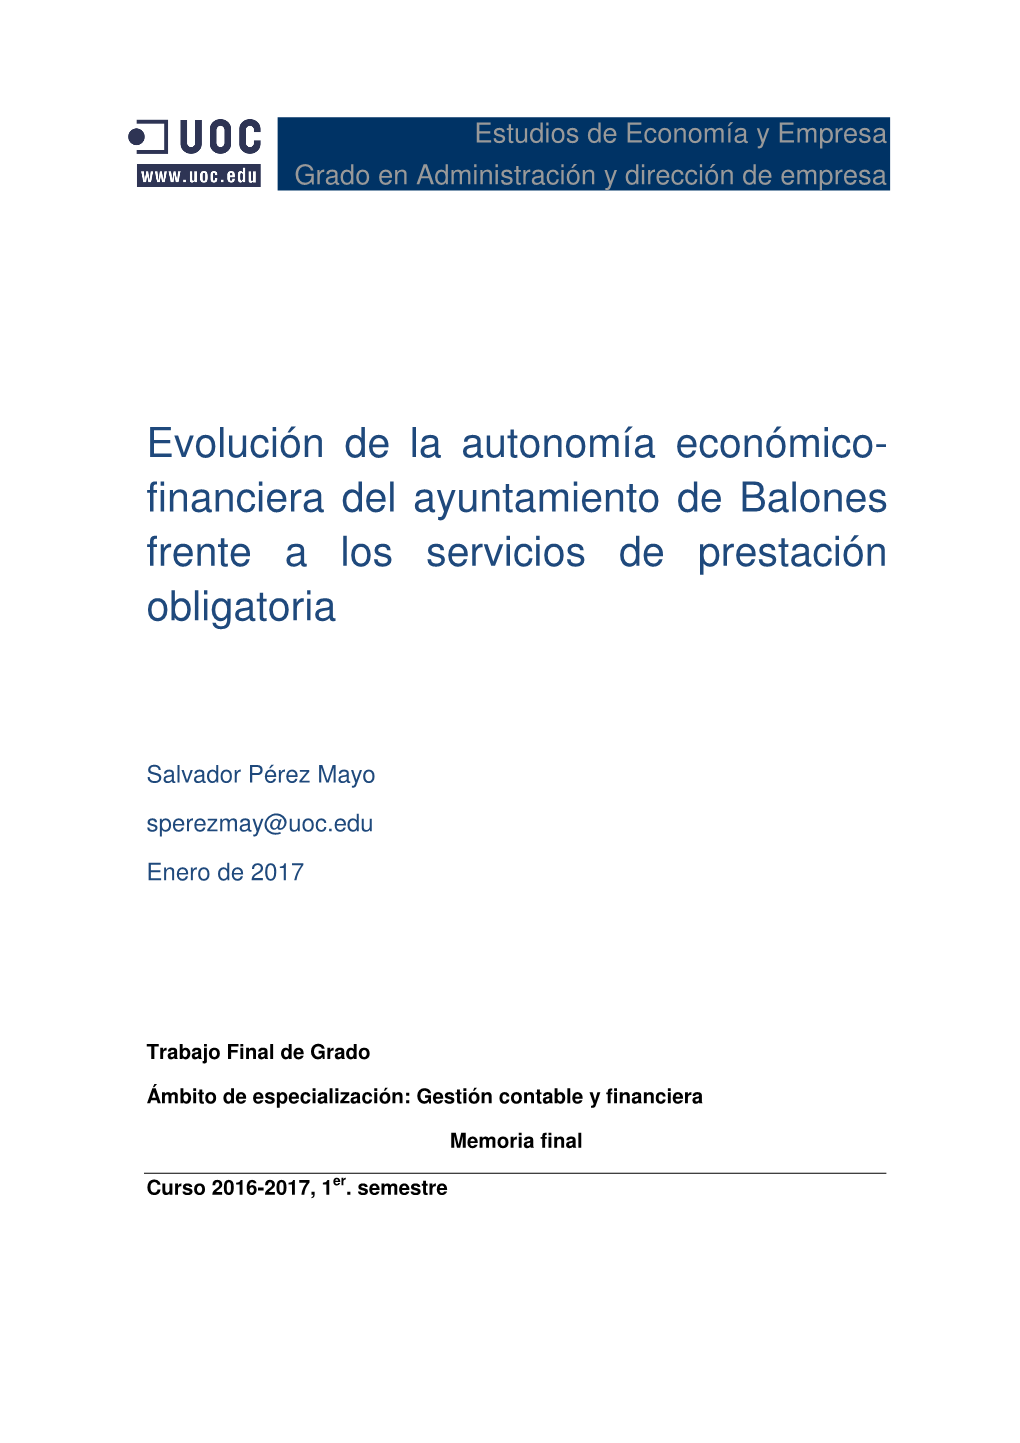 Evolución De La Autonomía Económico-Financiera Del Ayuntamiento De Balones Frente a Los Servicios De Prestación Obligatoria